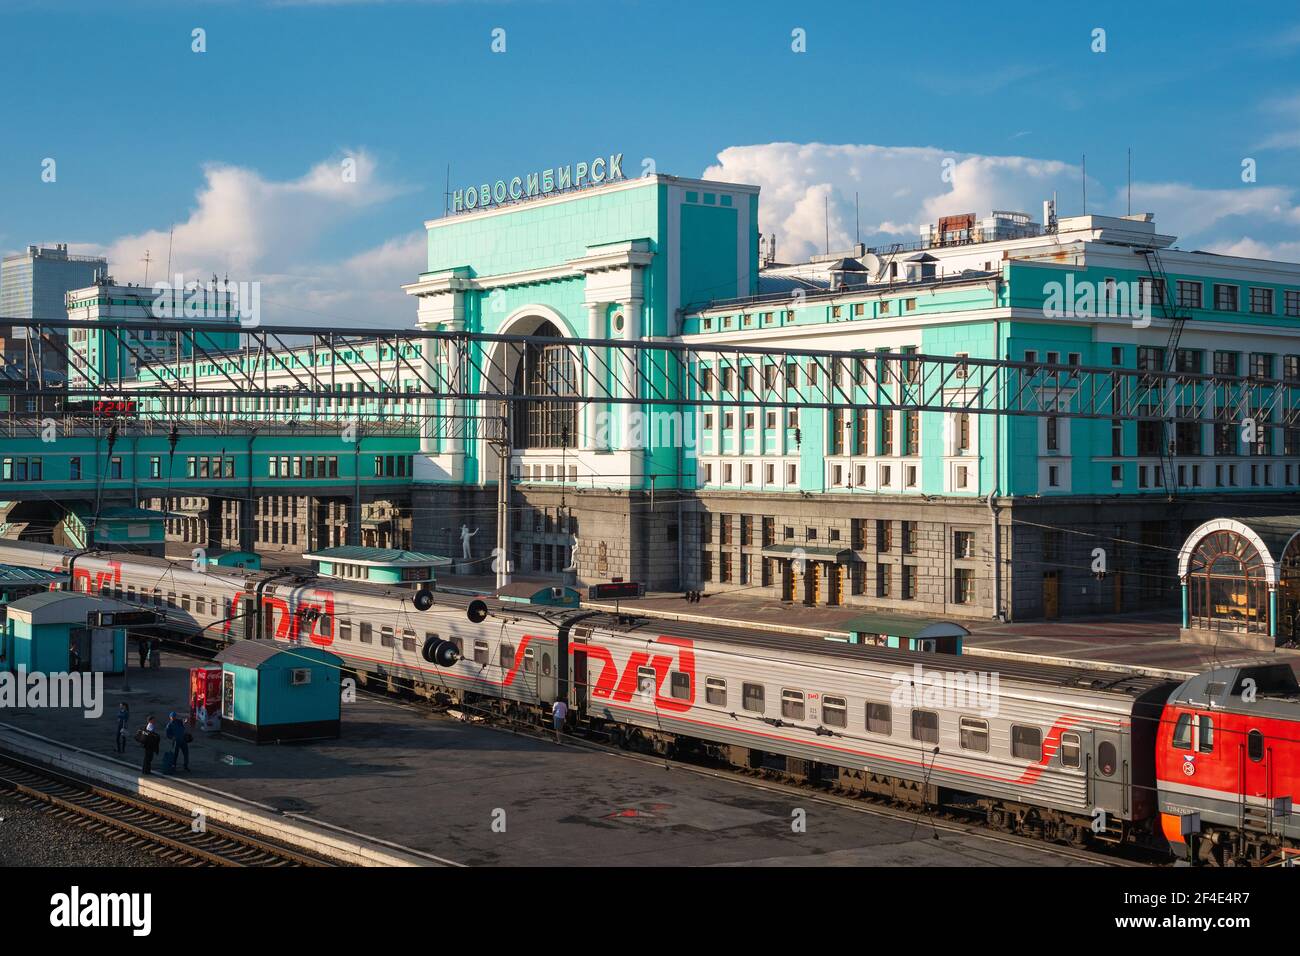 Bahnhof Nowosibirsk-Glavny in der Stadt Nowosibirsk, Russland, eine wichtige Station entlang der Transsibirischen Eisenbahn. Stockfoto